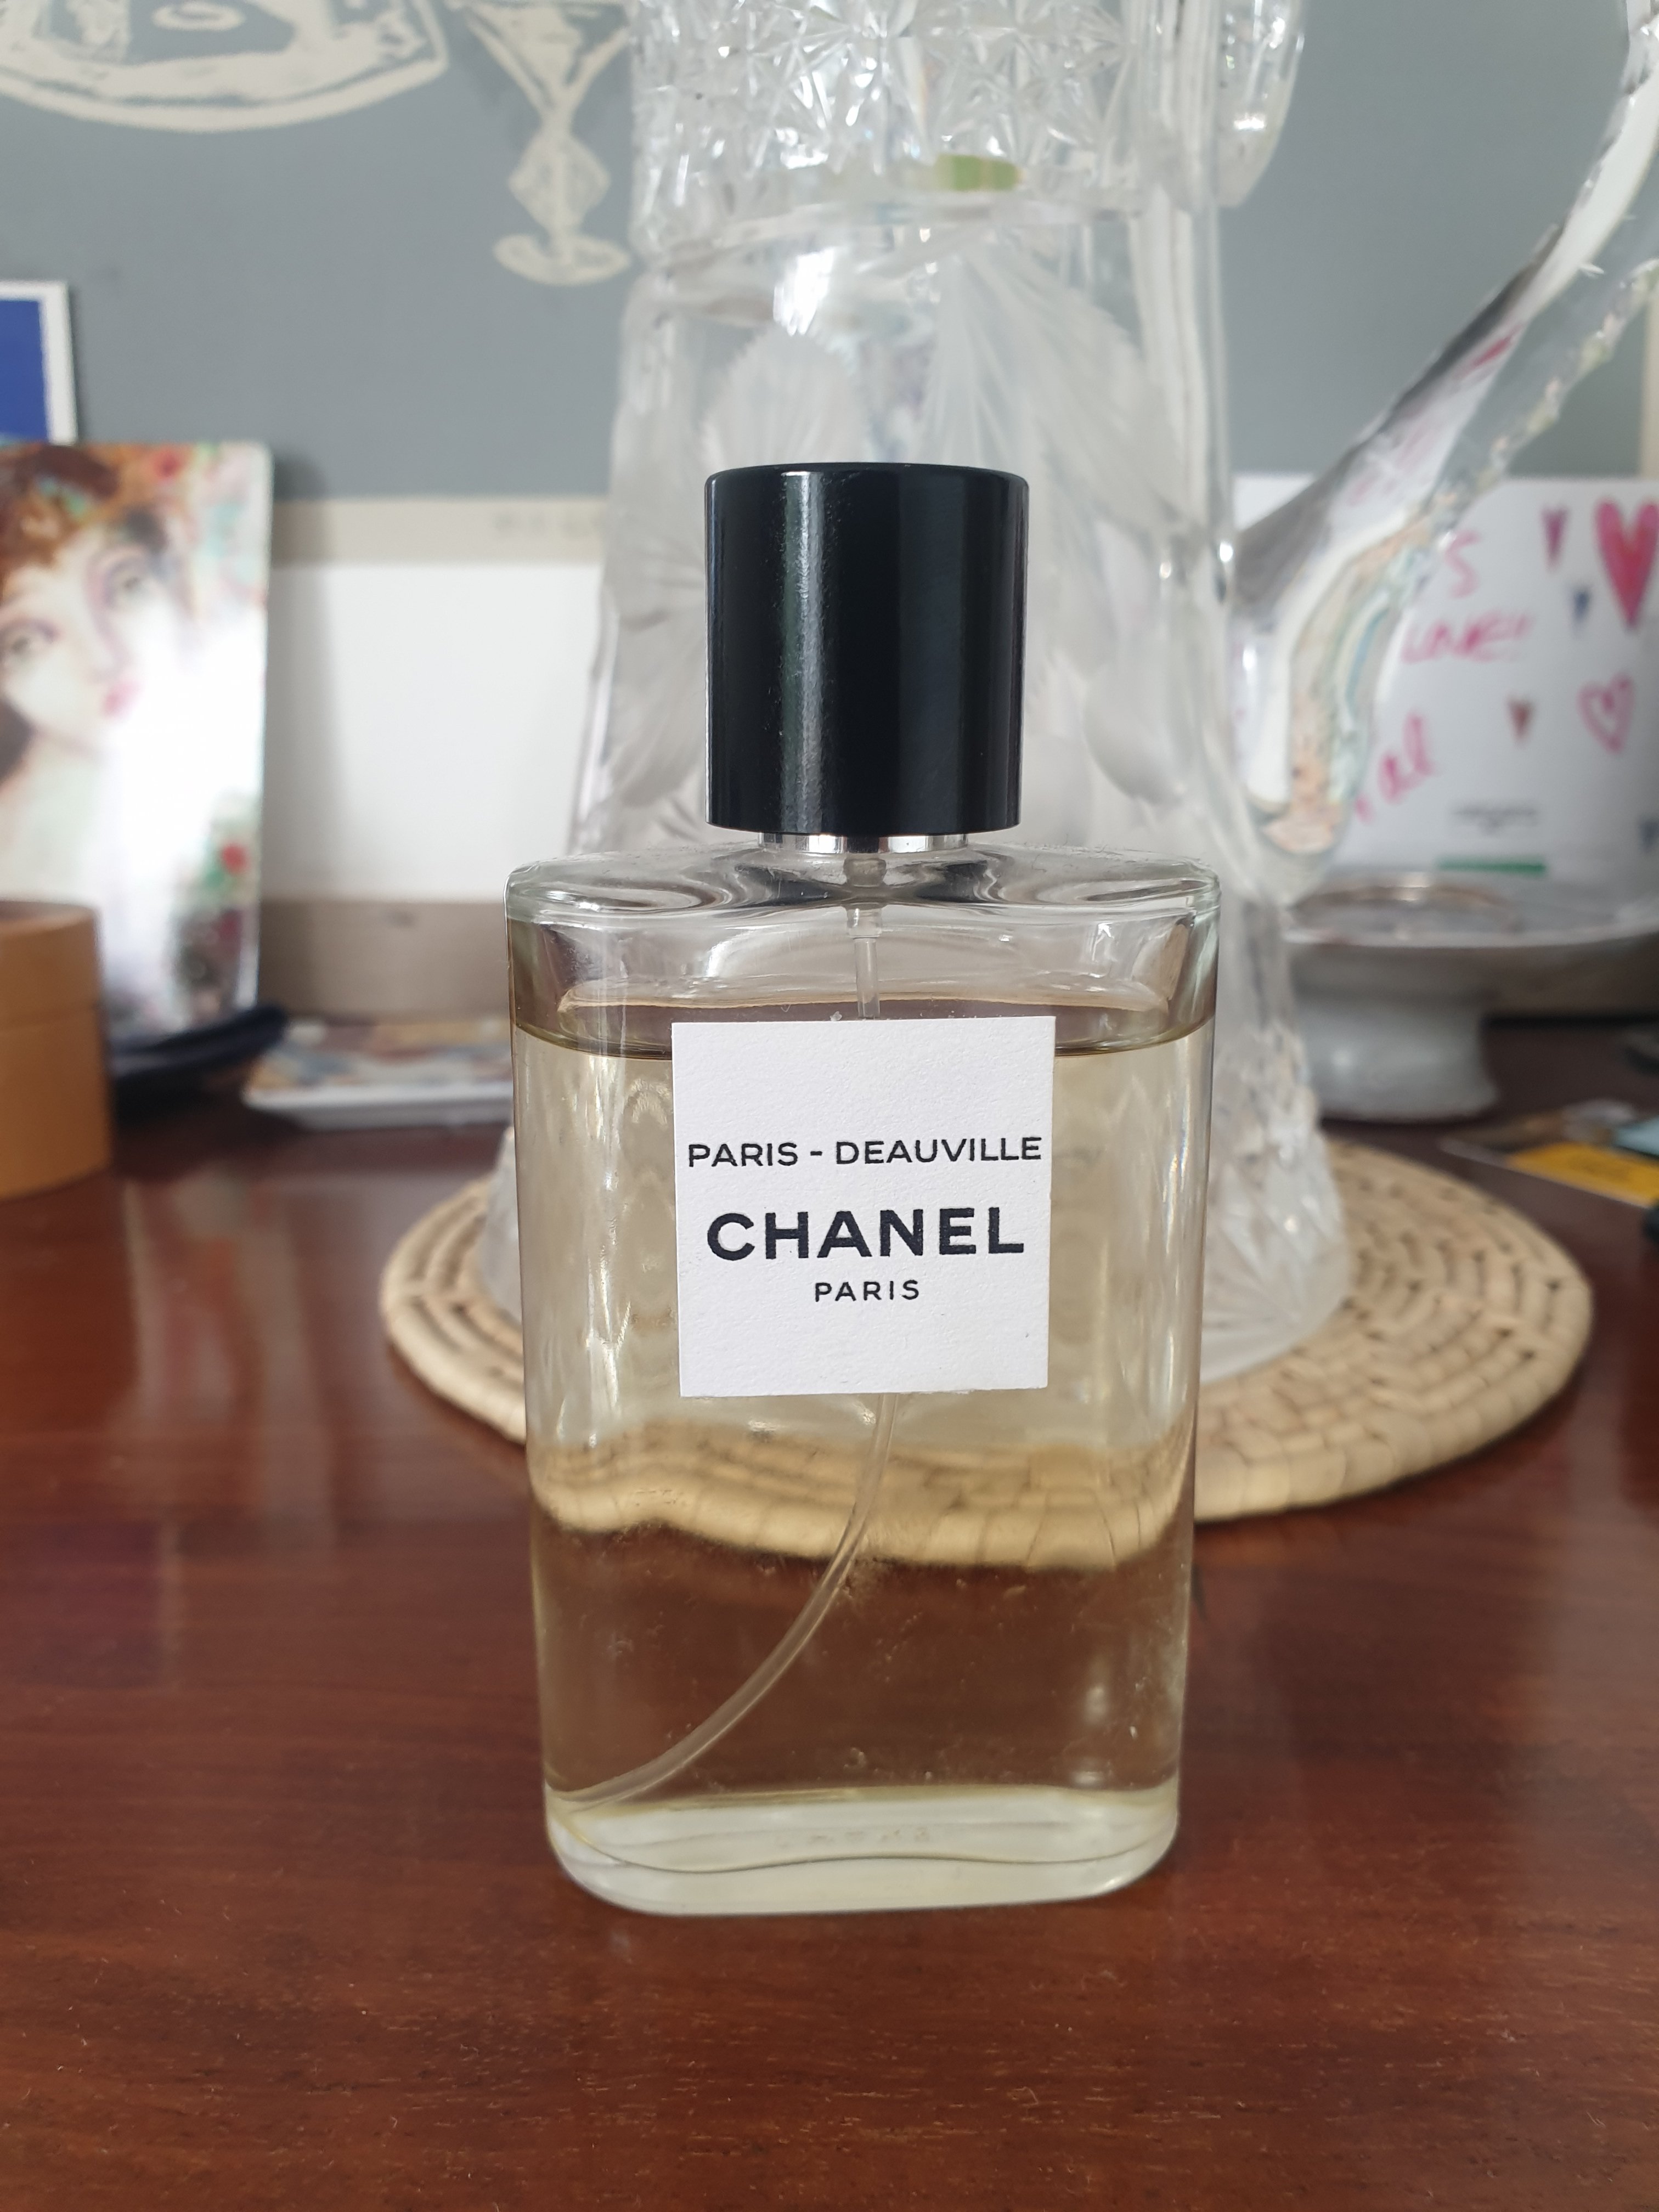 CHANEL Paris - Deauville Perfume Review - Les Eaux de CHANEL